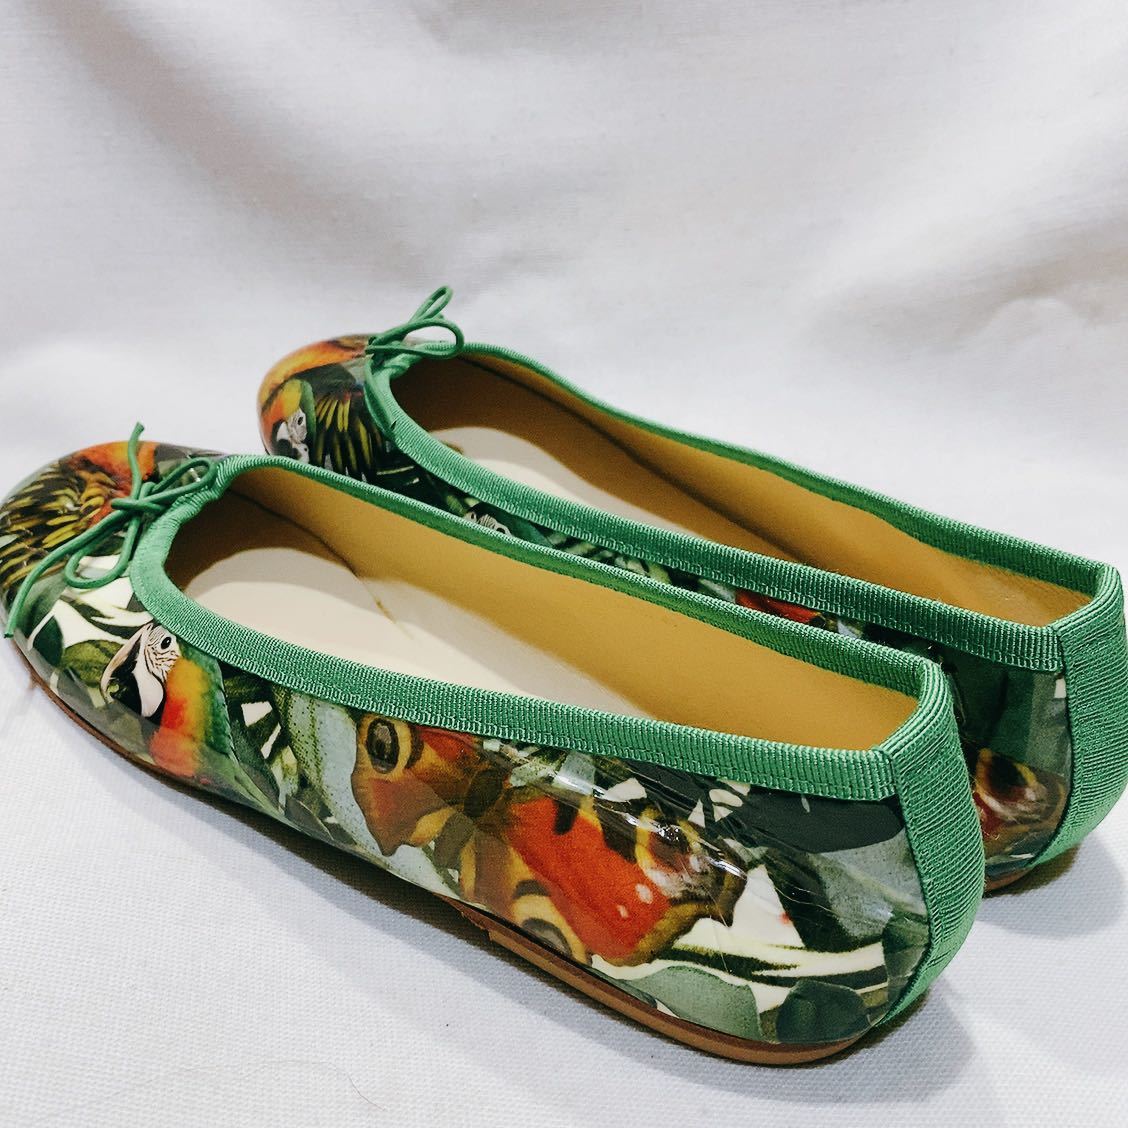 !gi-sva in ballet shoes / green color / bird pattern /GIESSWEIN